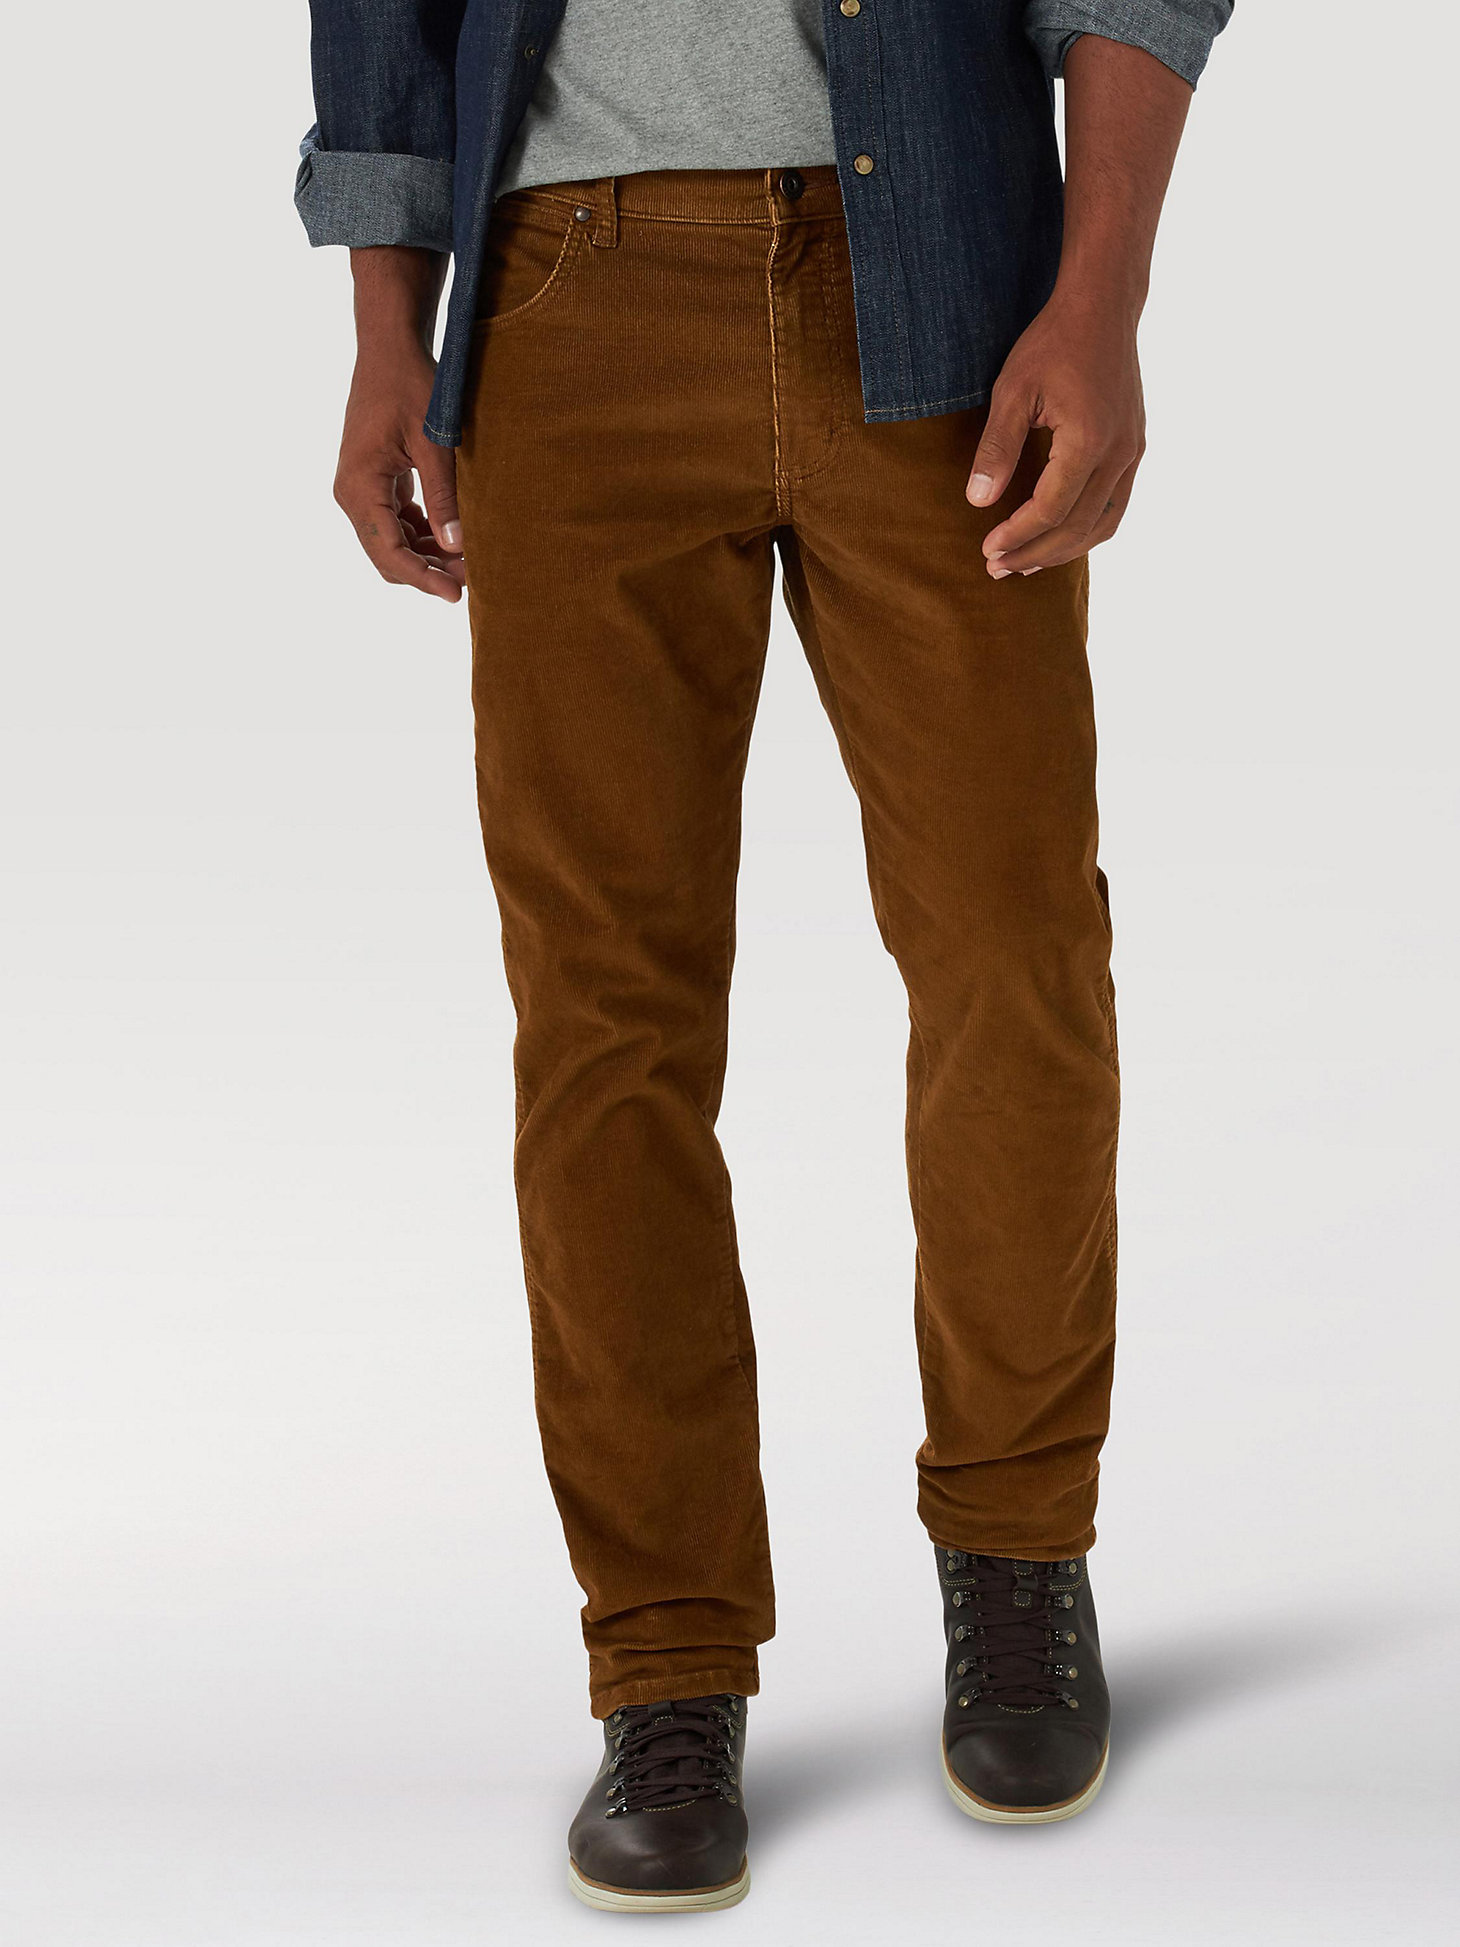 Men's Wrangler® Regular Tapered Corduroy Jeans in Monks Robe main view